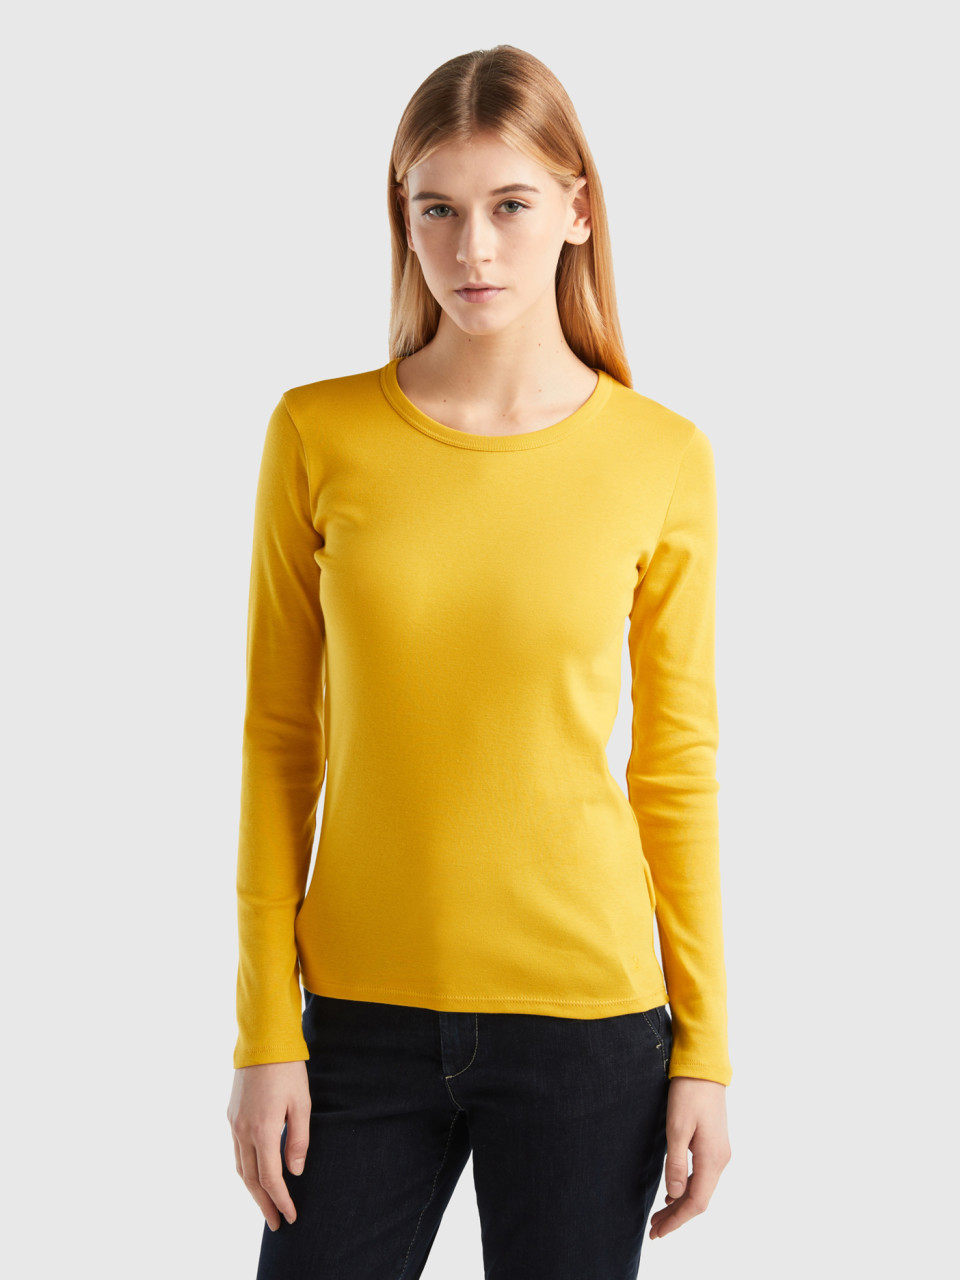 Benetton, Long Sleeve Pure Cotton T-shirt, Yellow, Women